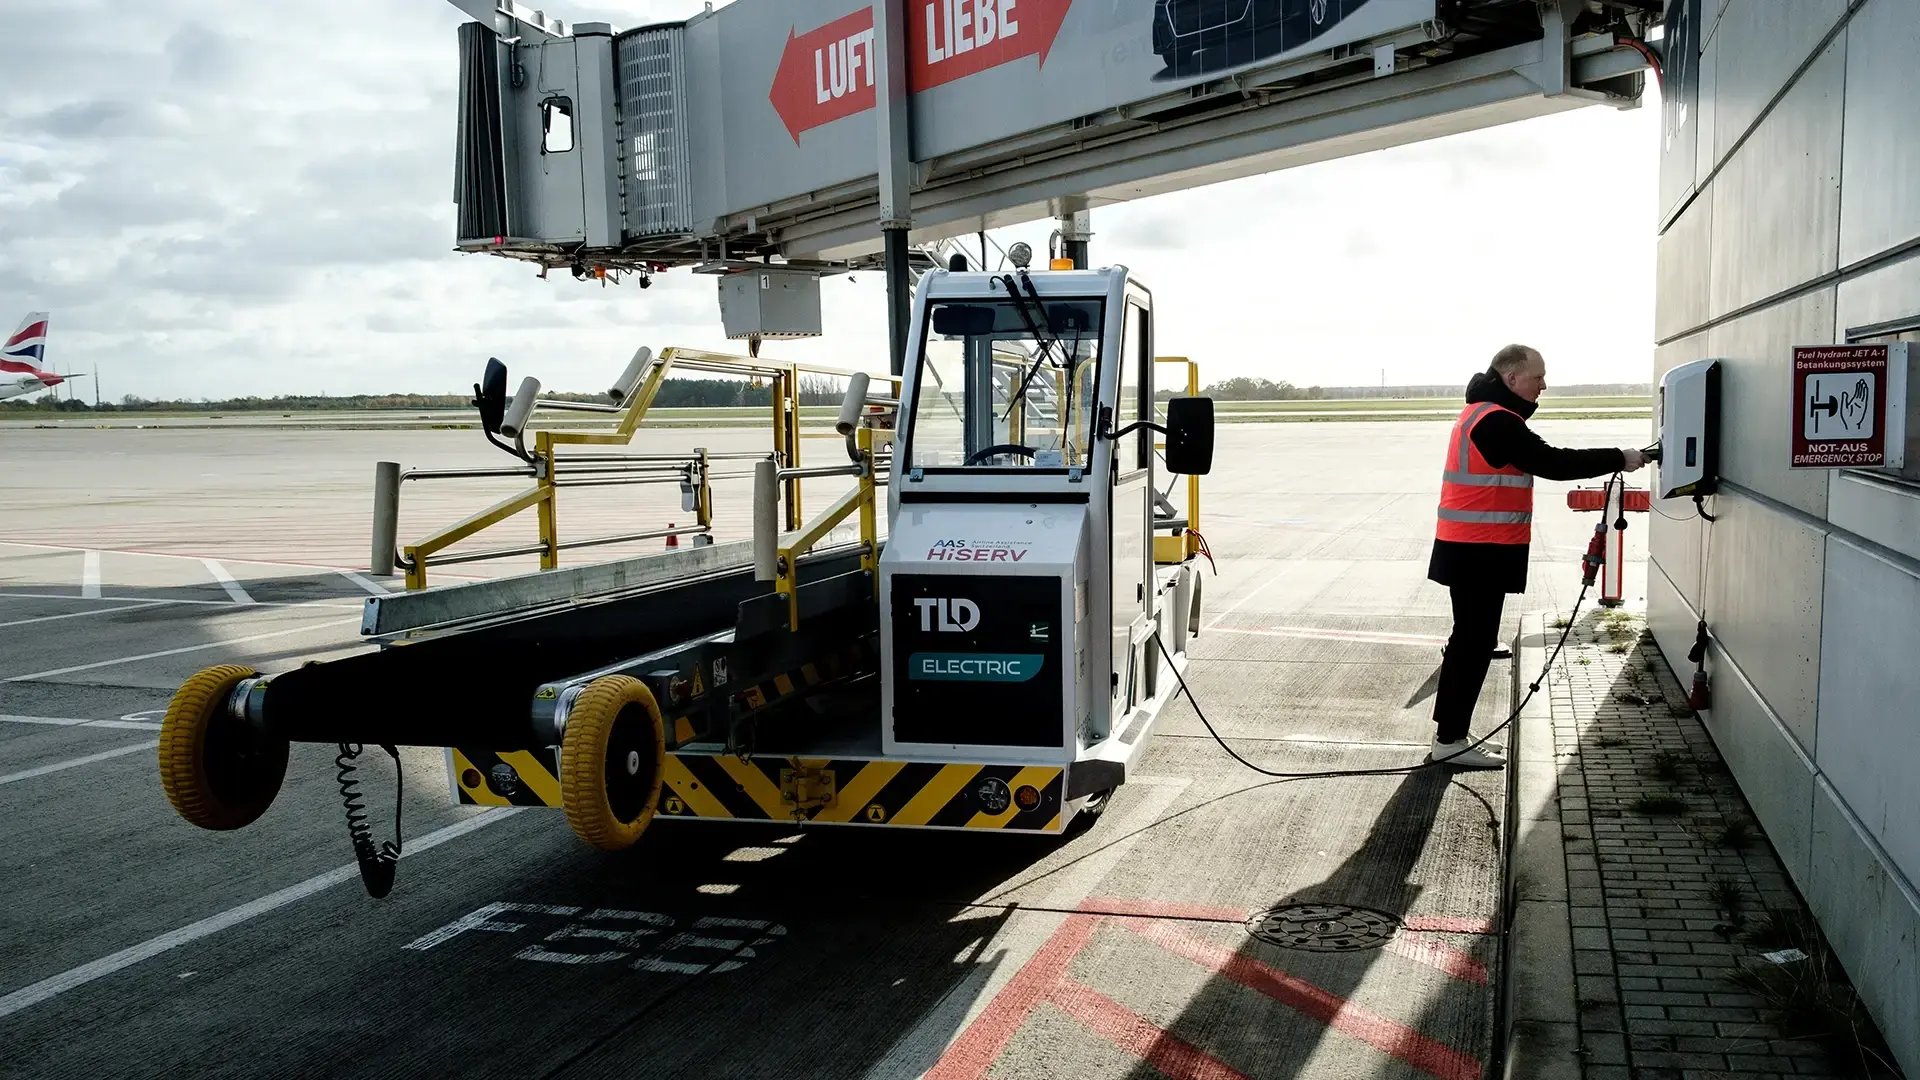 BER Flughafen Berlin Brandenburg elektrisches Zugfahrzeug wird am Gate an Ladestation geladen